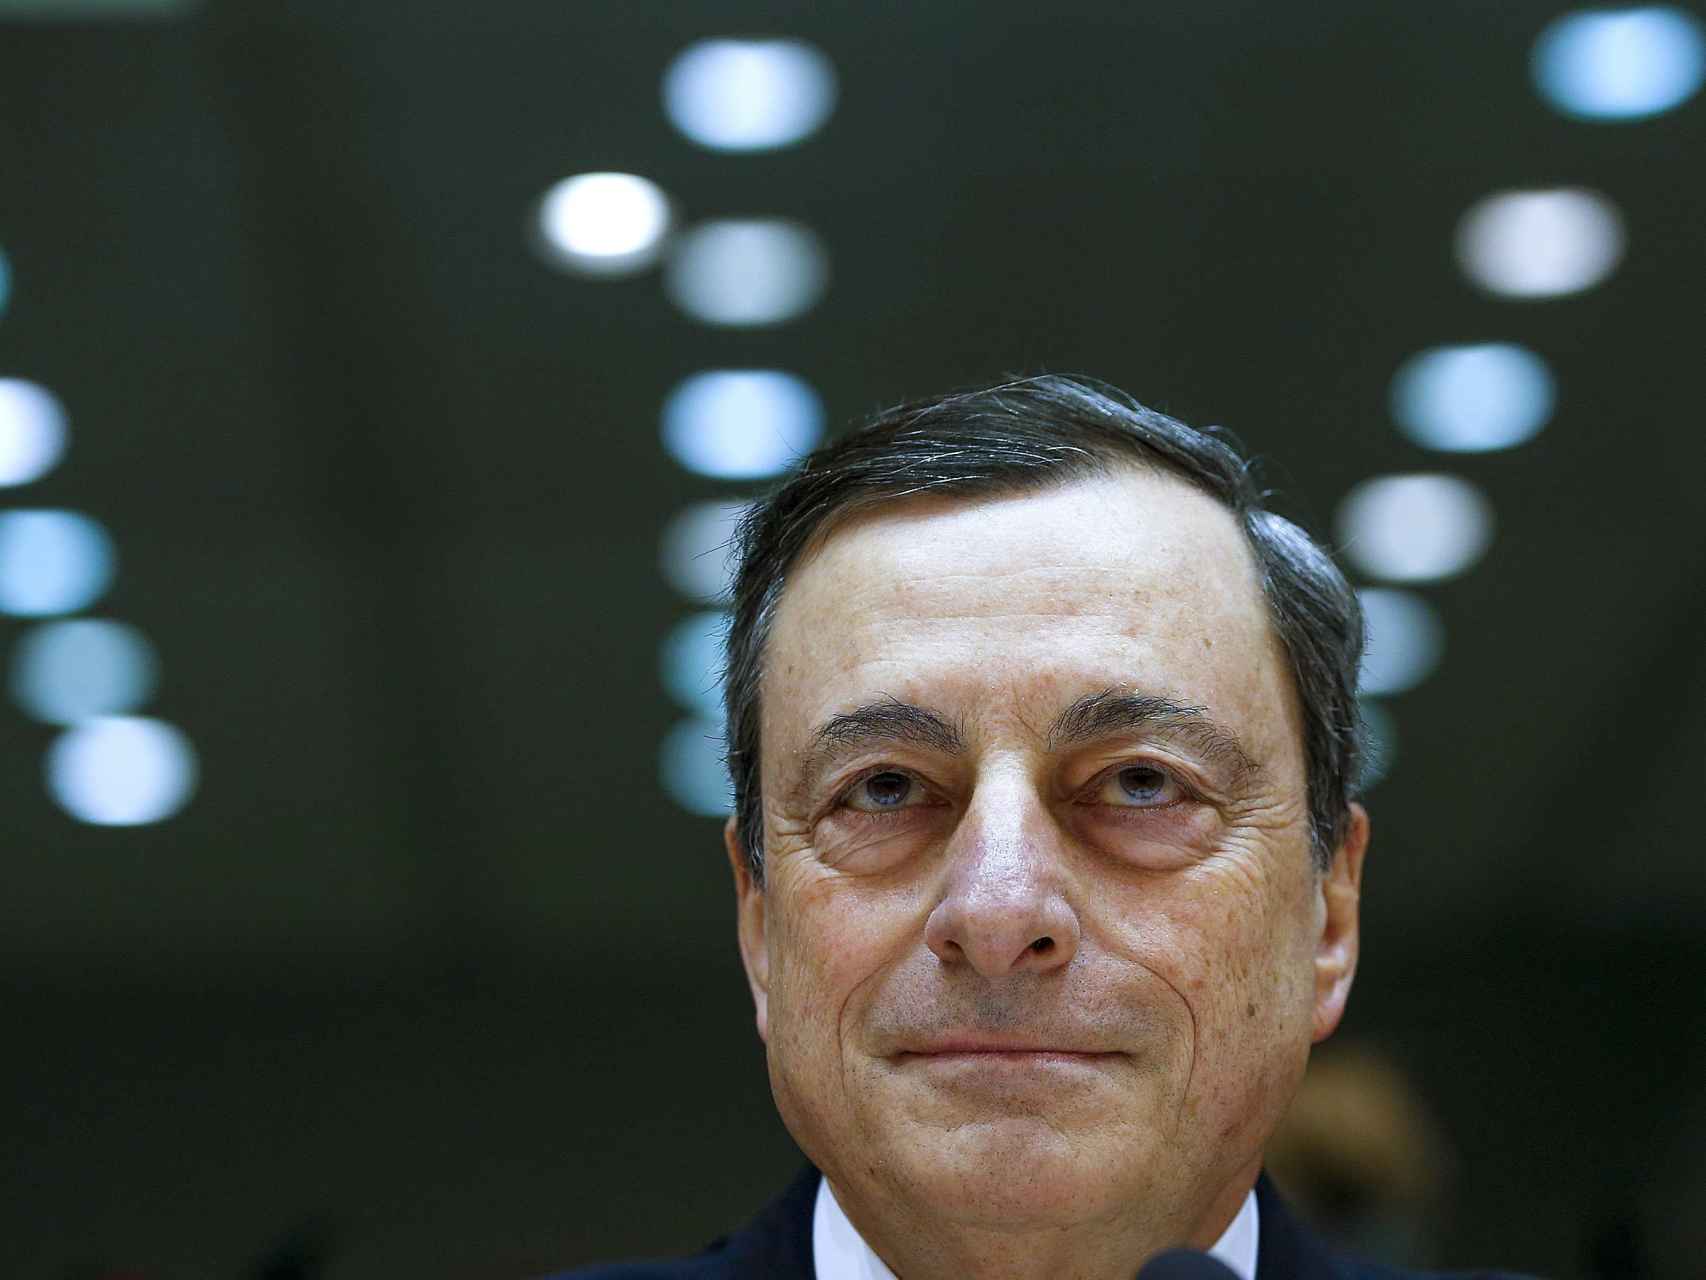 El presidente del BCE, Mario Draghi, en la Eurocámara